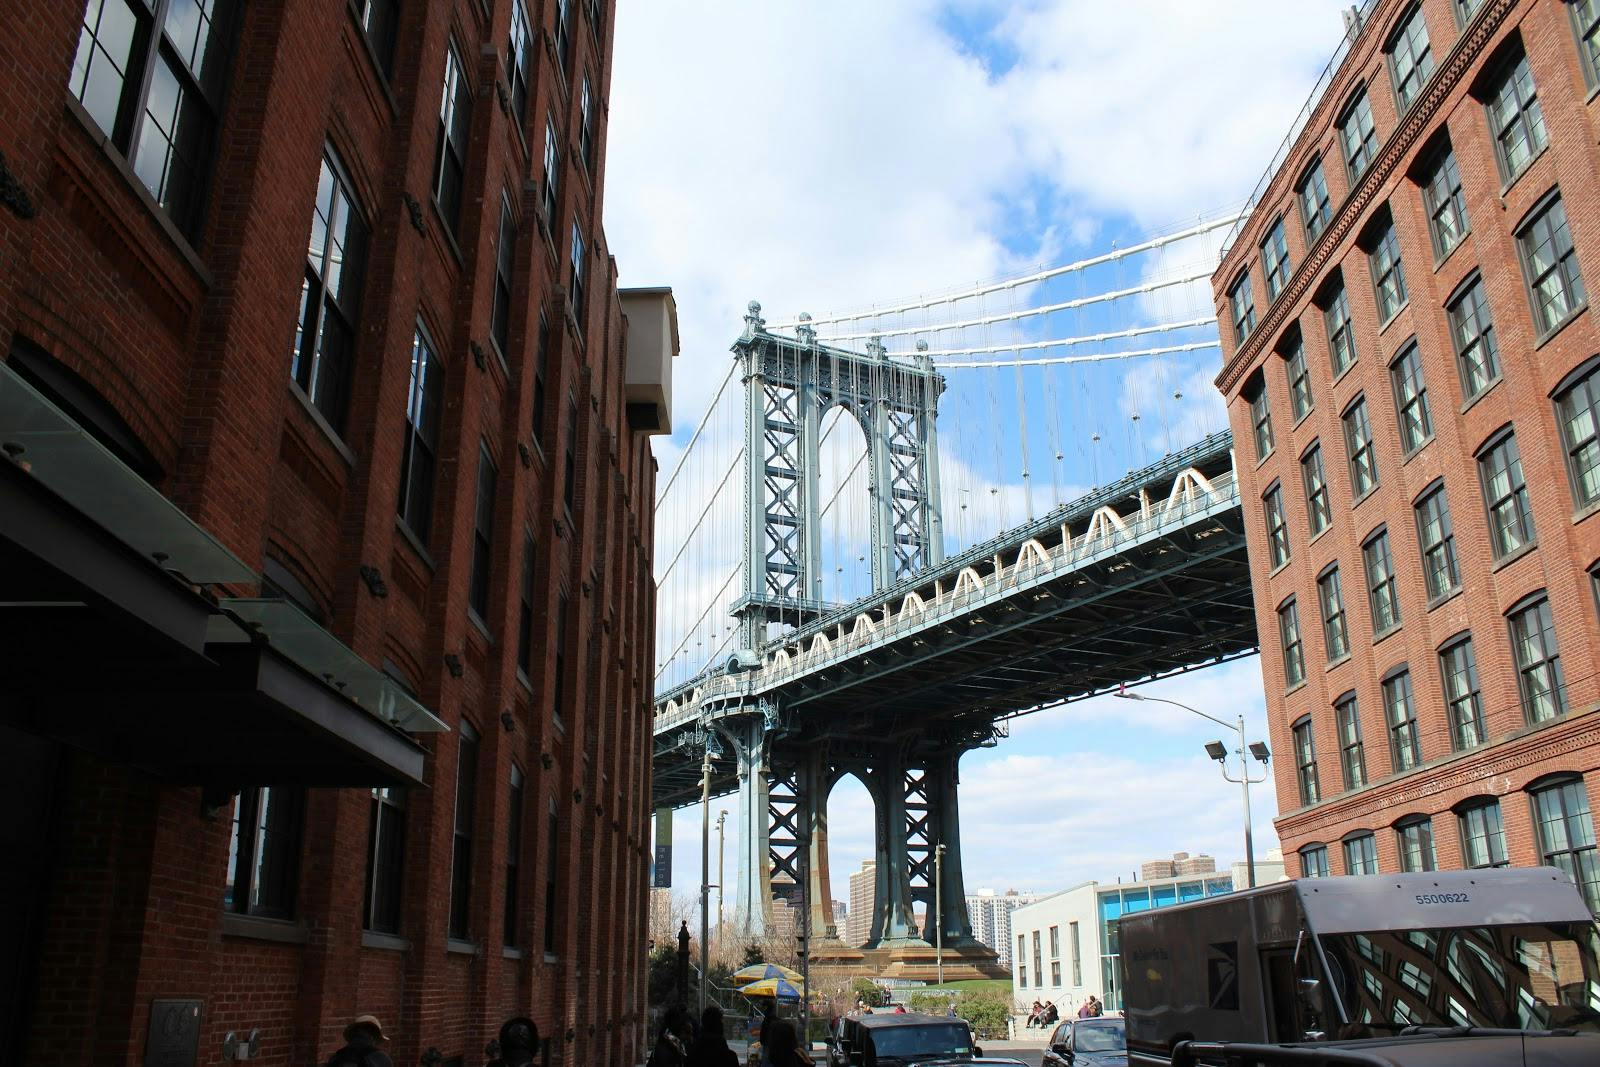 Image - Dumbo - Manhattan Bridge View